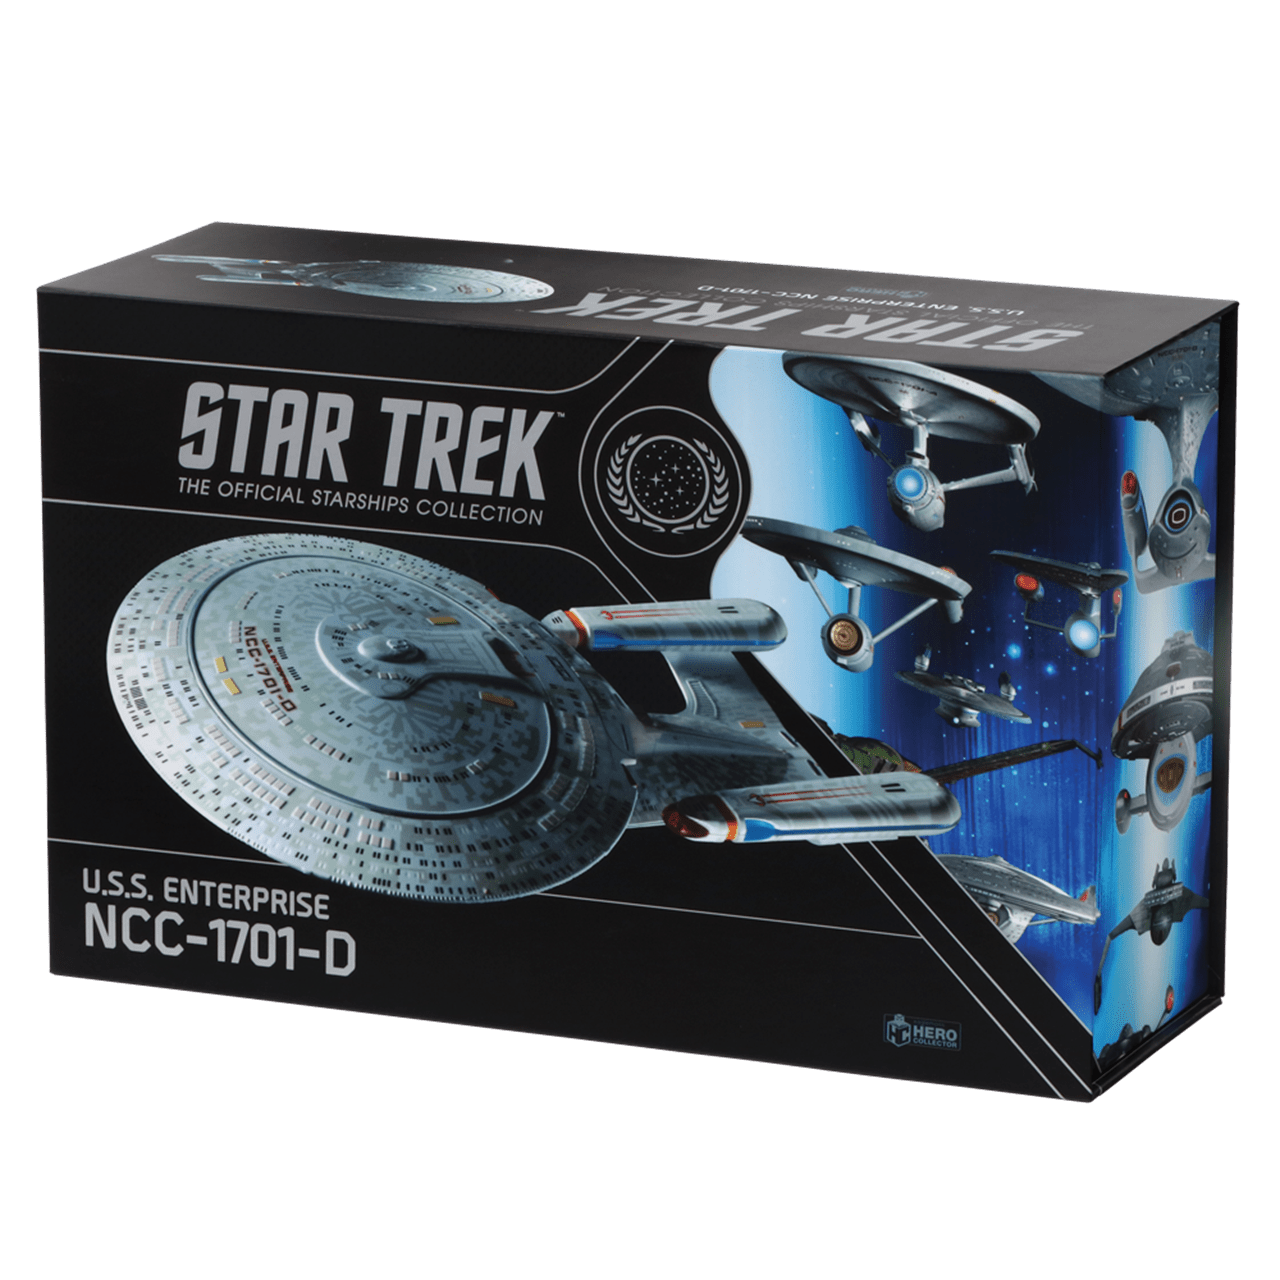 star trek collector series action figures